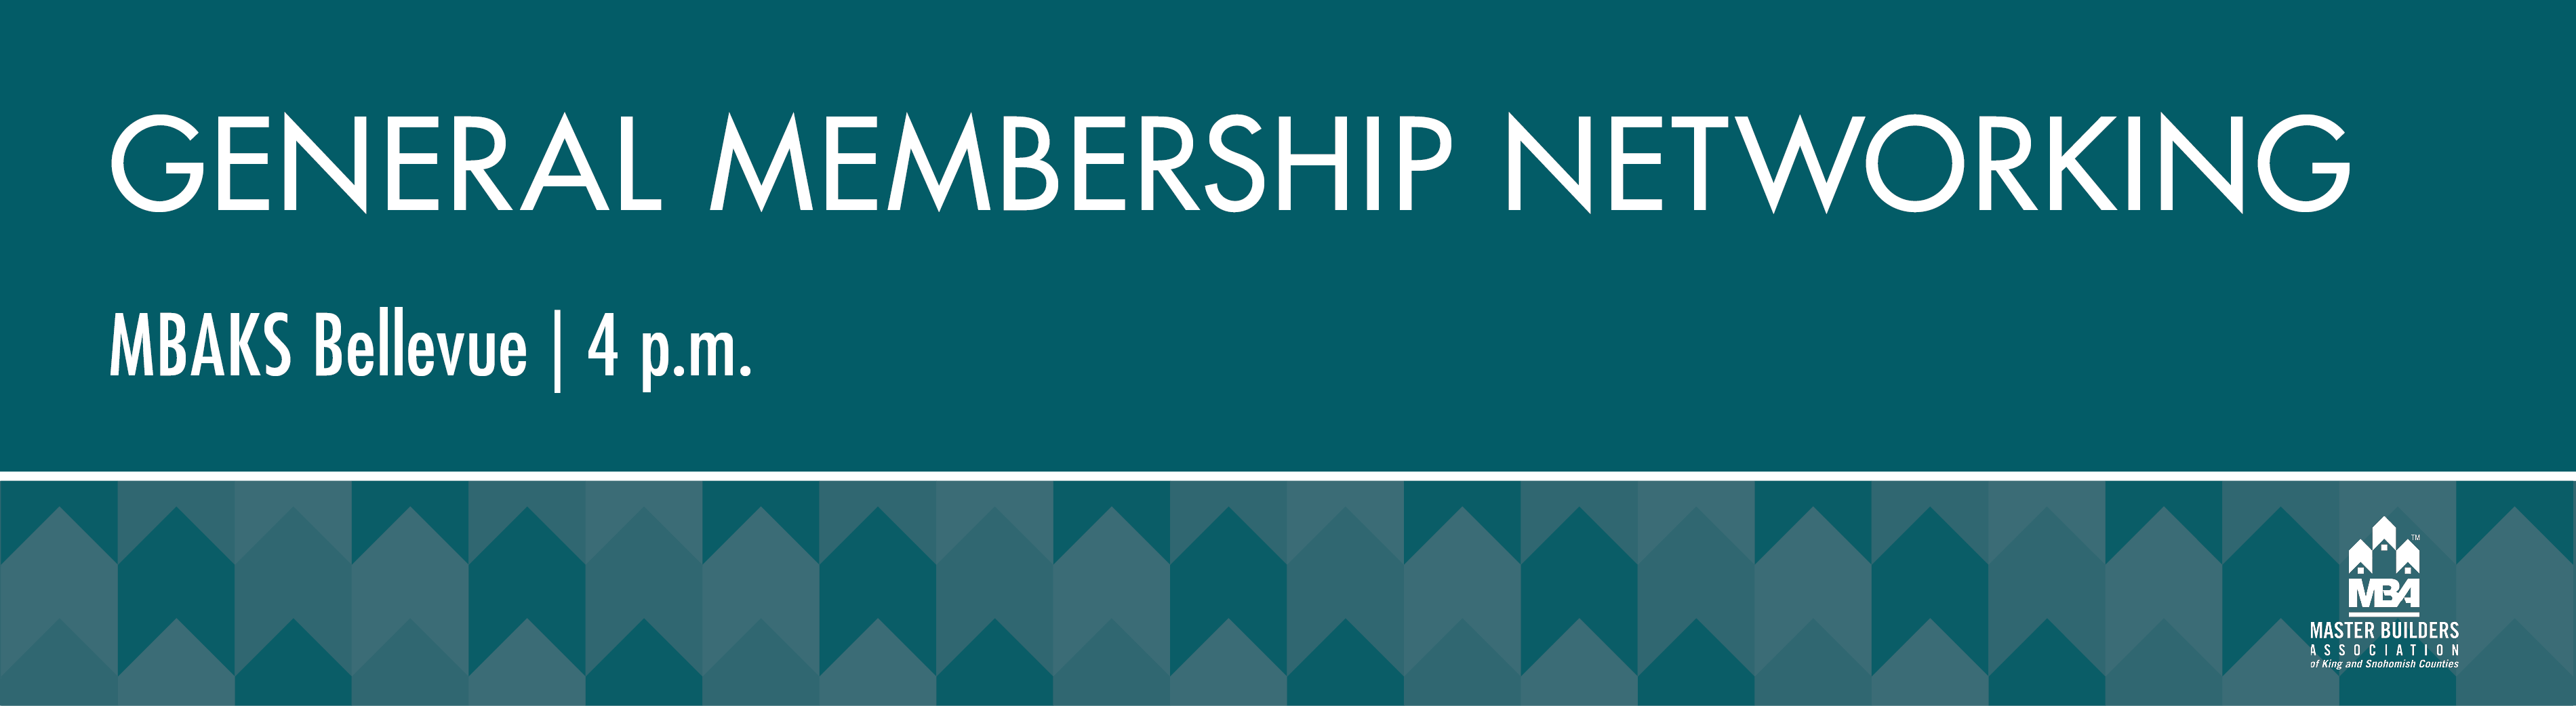 General Membership Networking